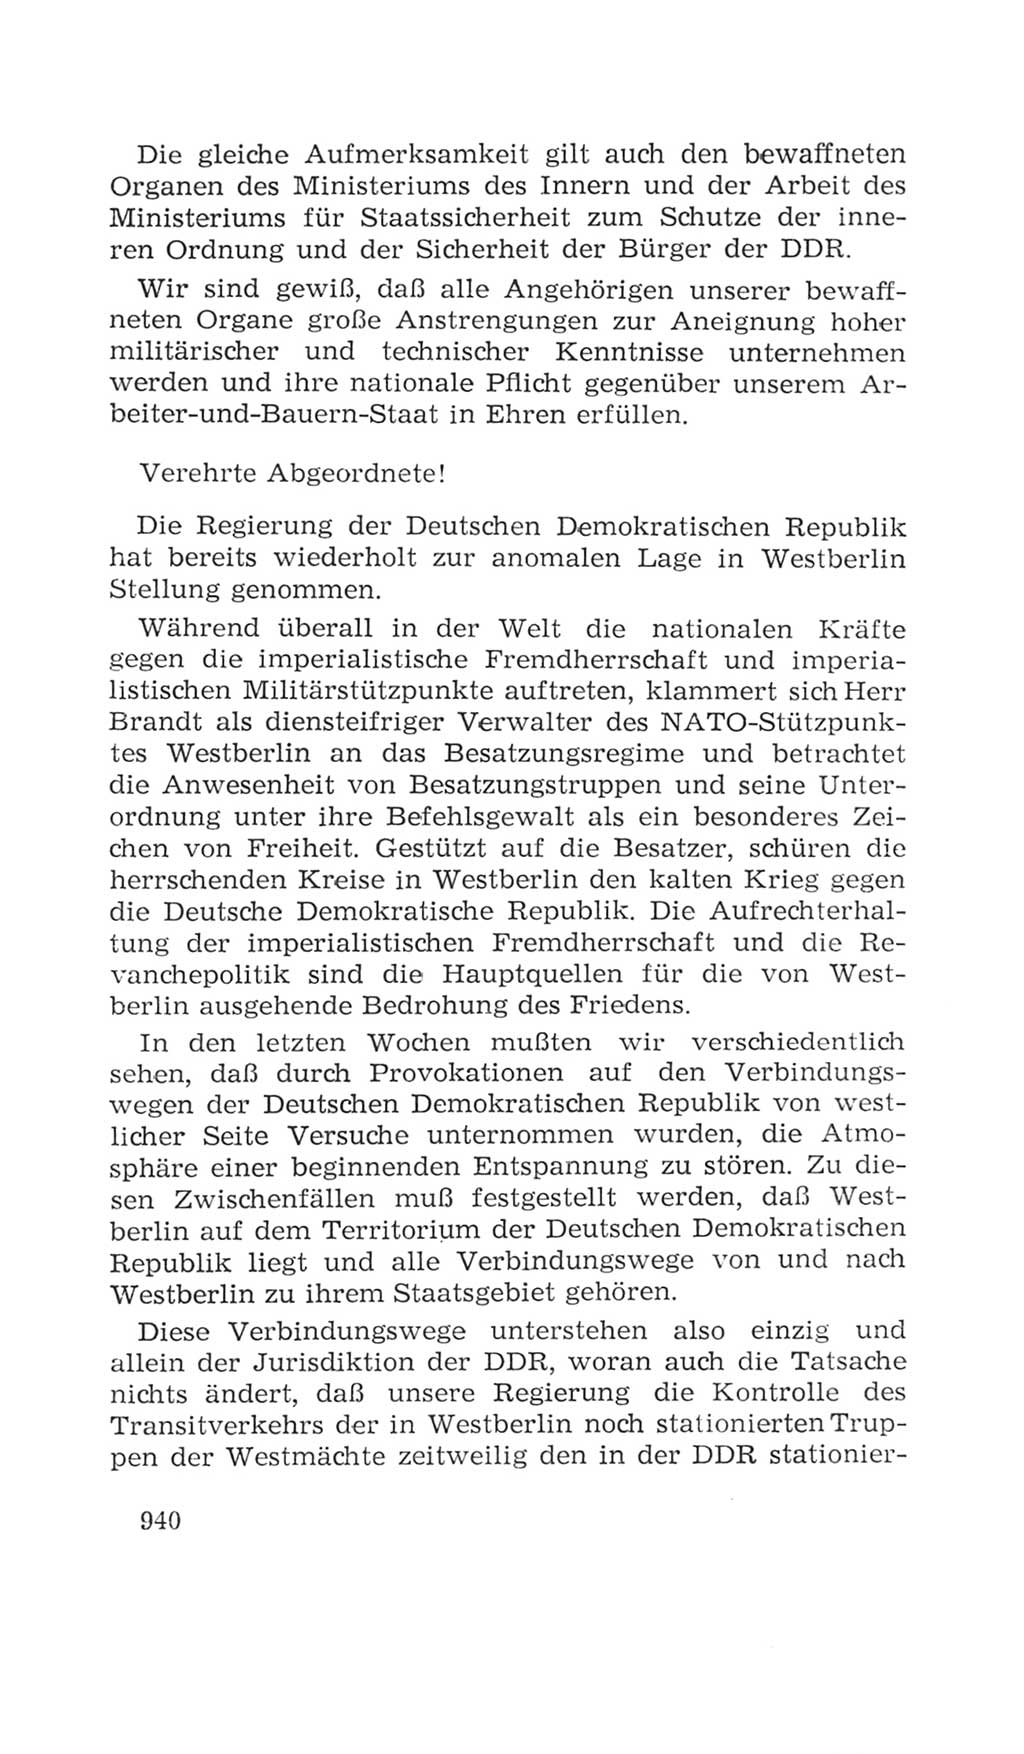 Volkskammer (VK) der Deutschen Demokratischen Republik (DDR), 4. Wahlperiode 1963-1967, Seite 940 (VK. DDR 4. WP. 1963-1967, S. 940)